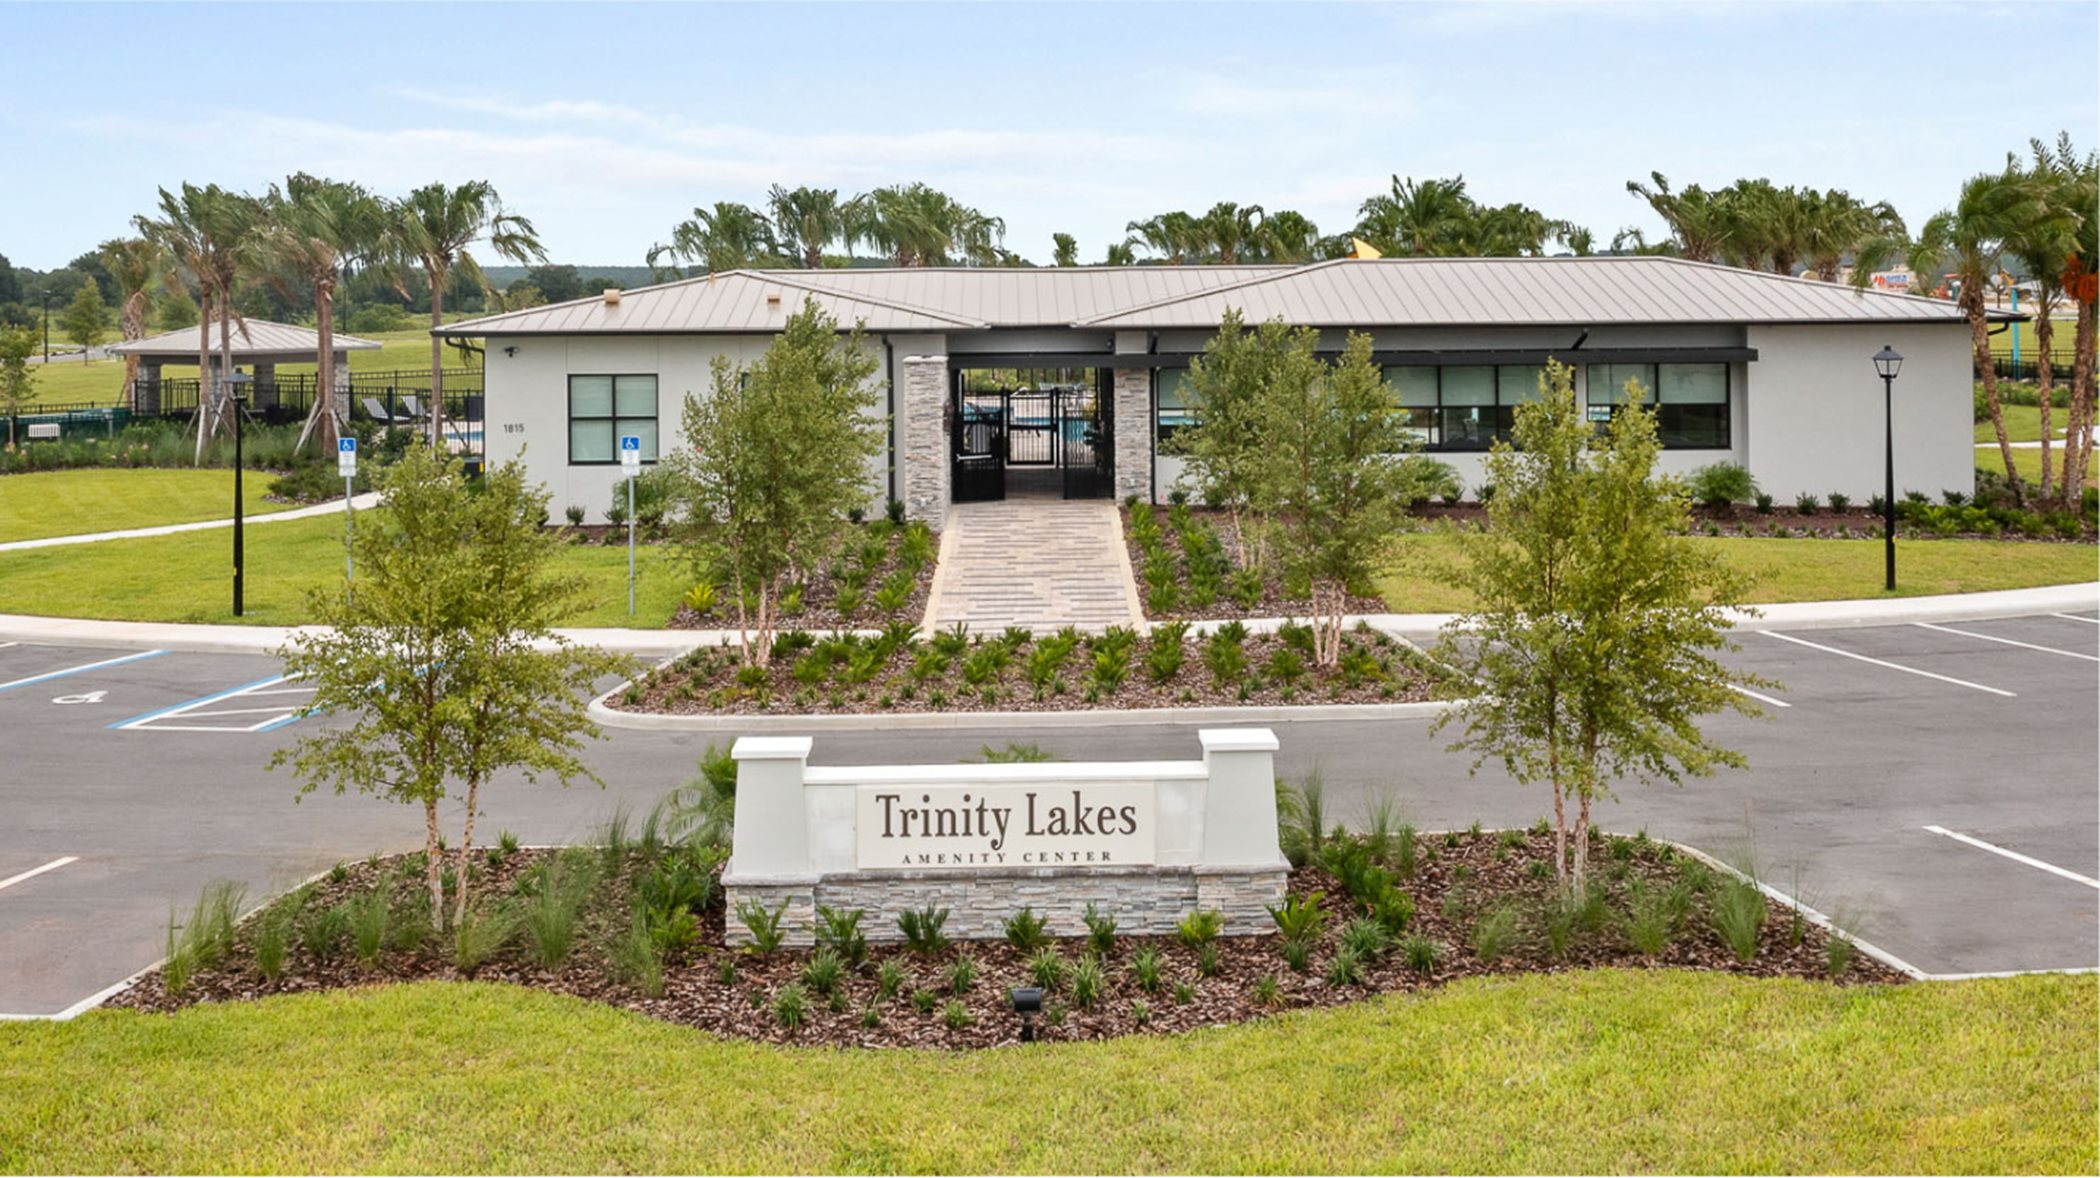 Trinity Lakes club house